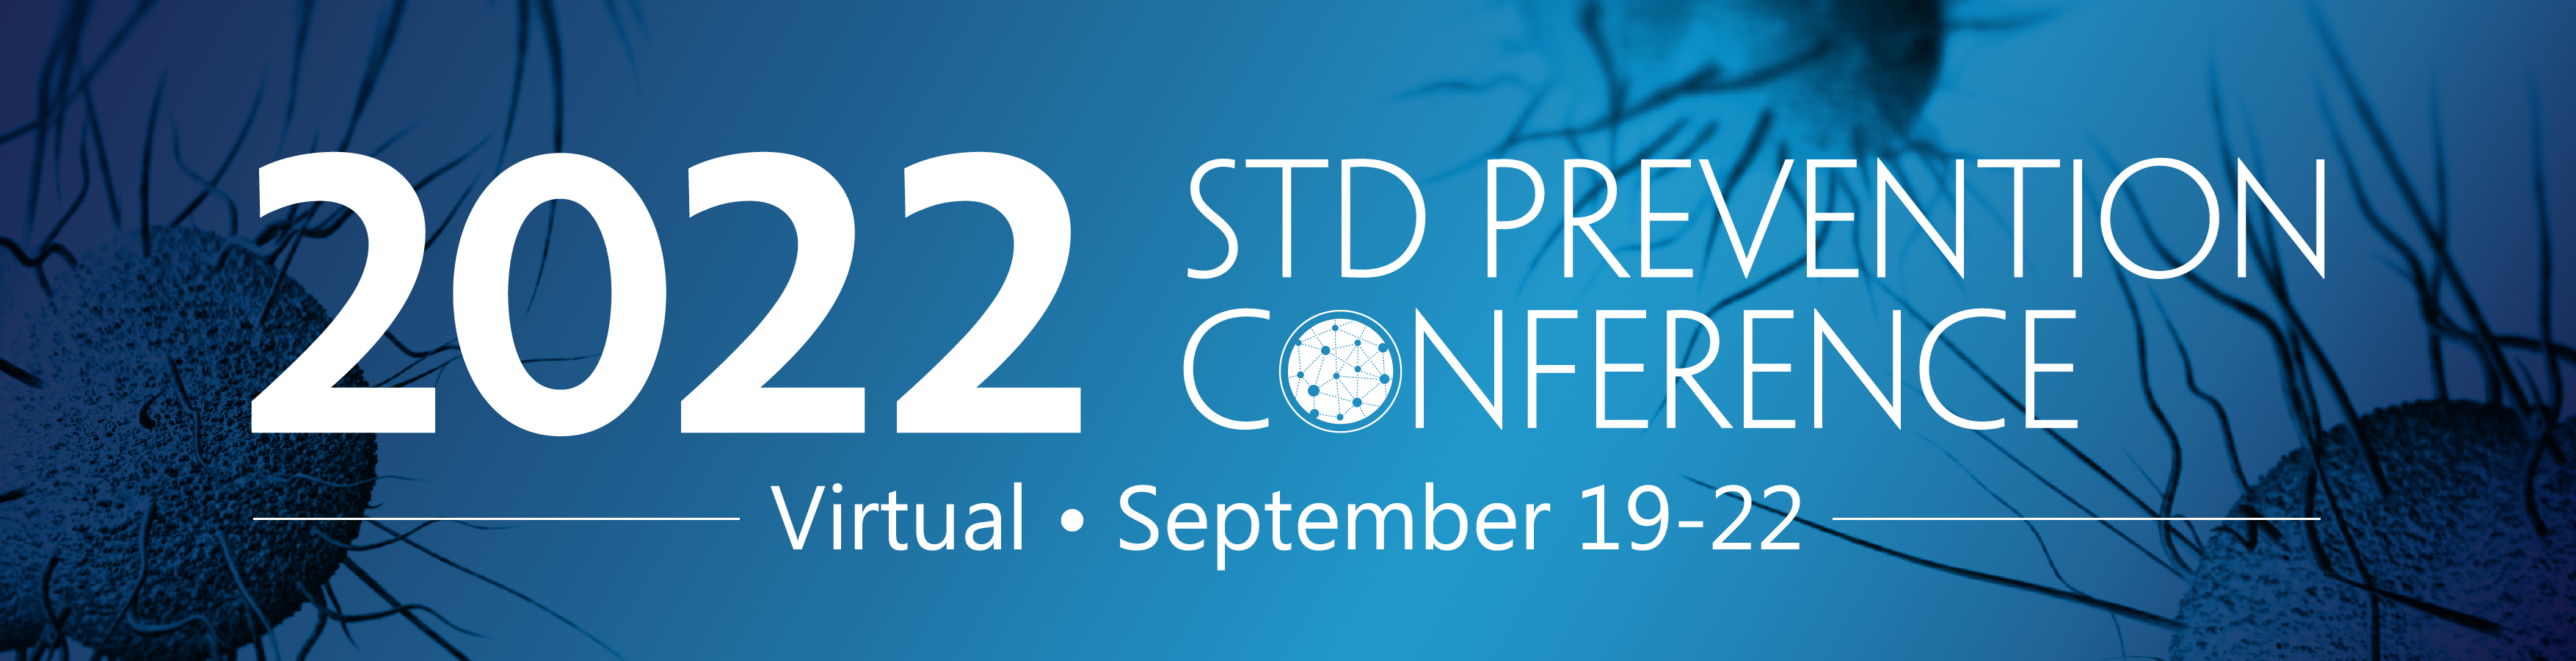 Register 2022 STD Prevention Conference